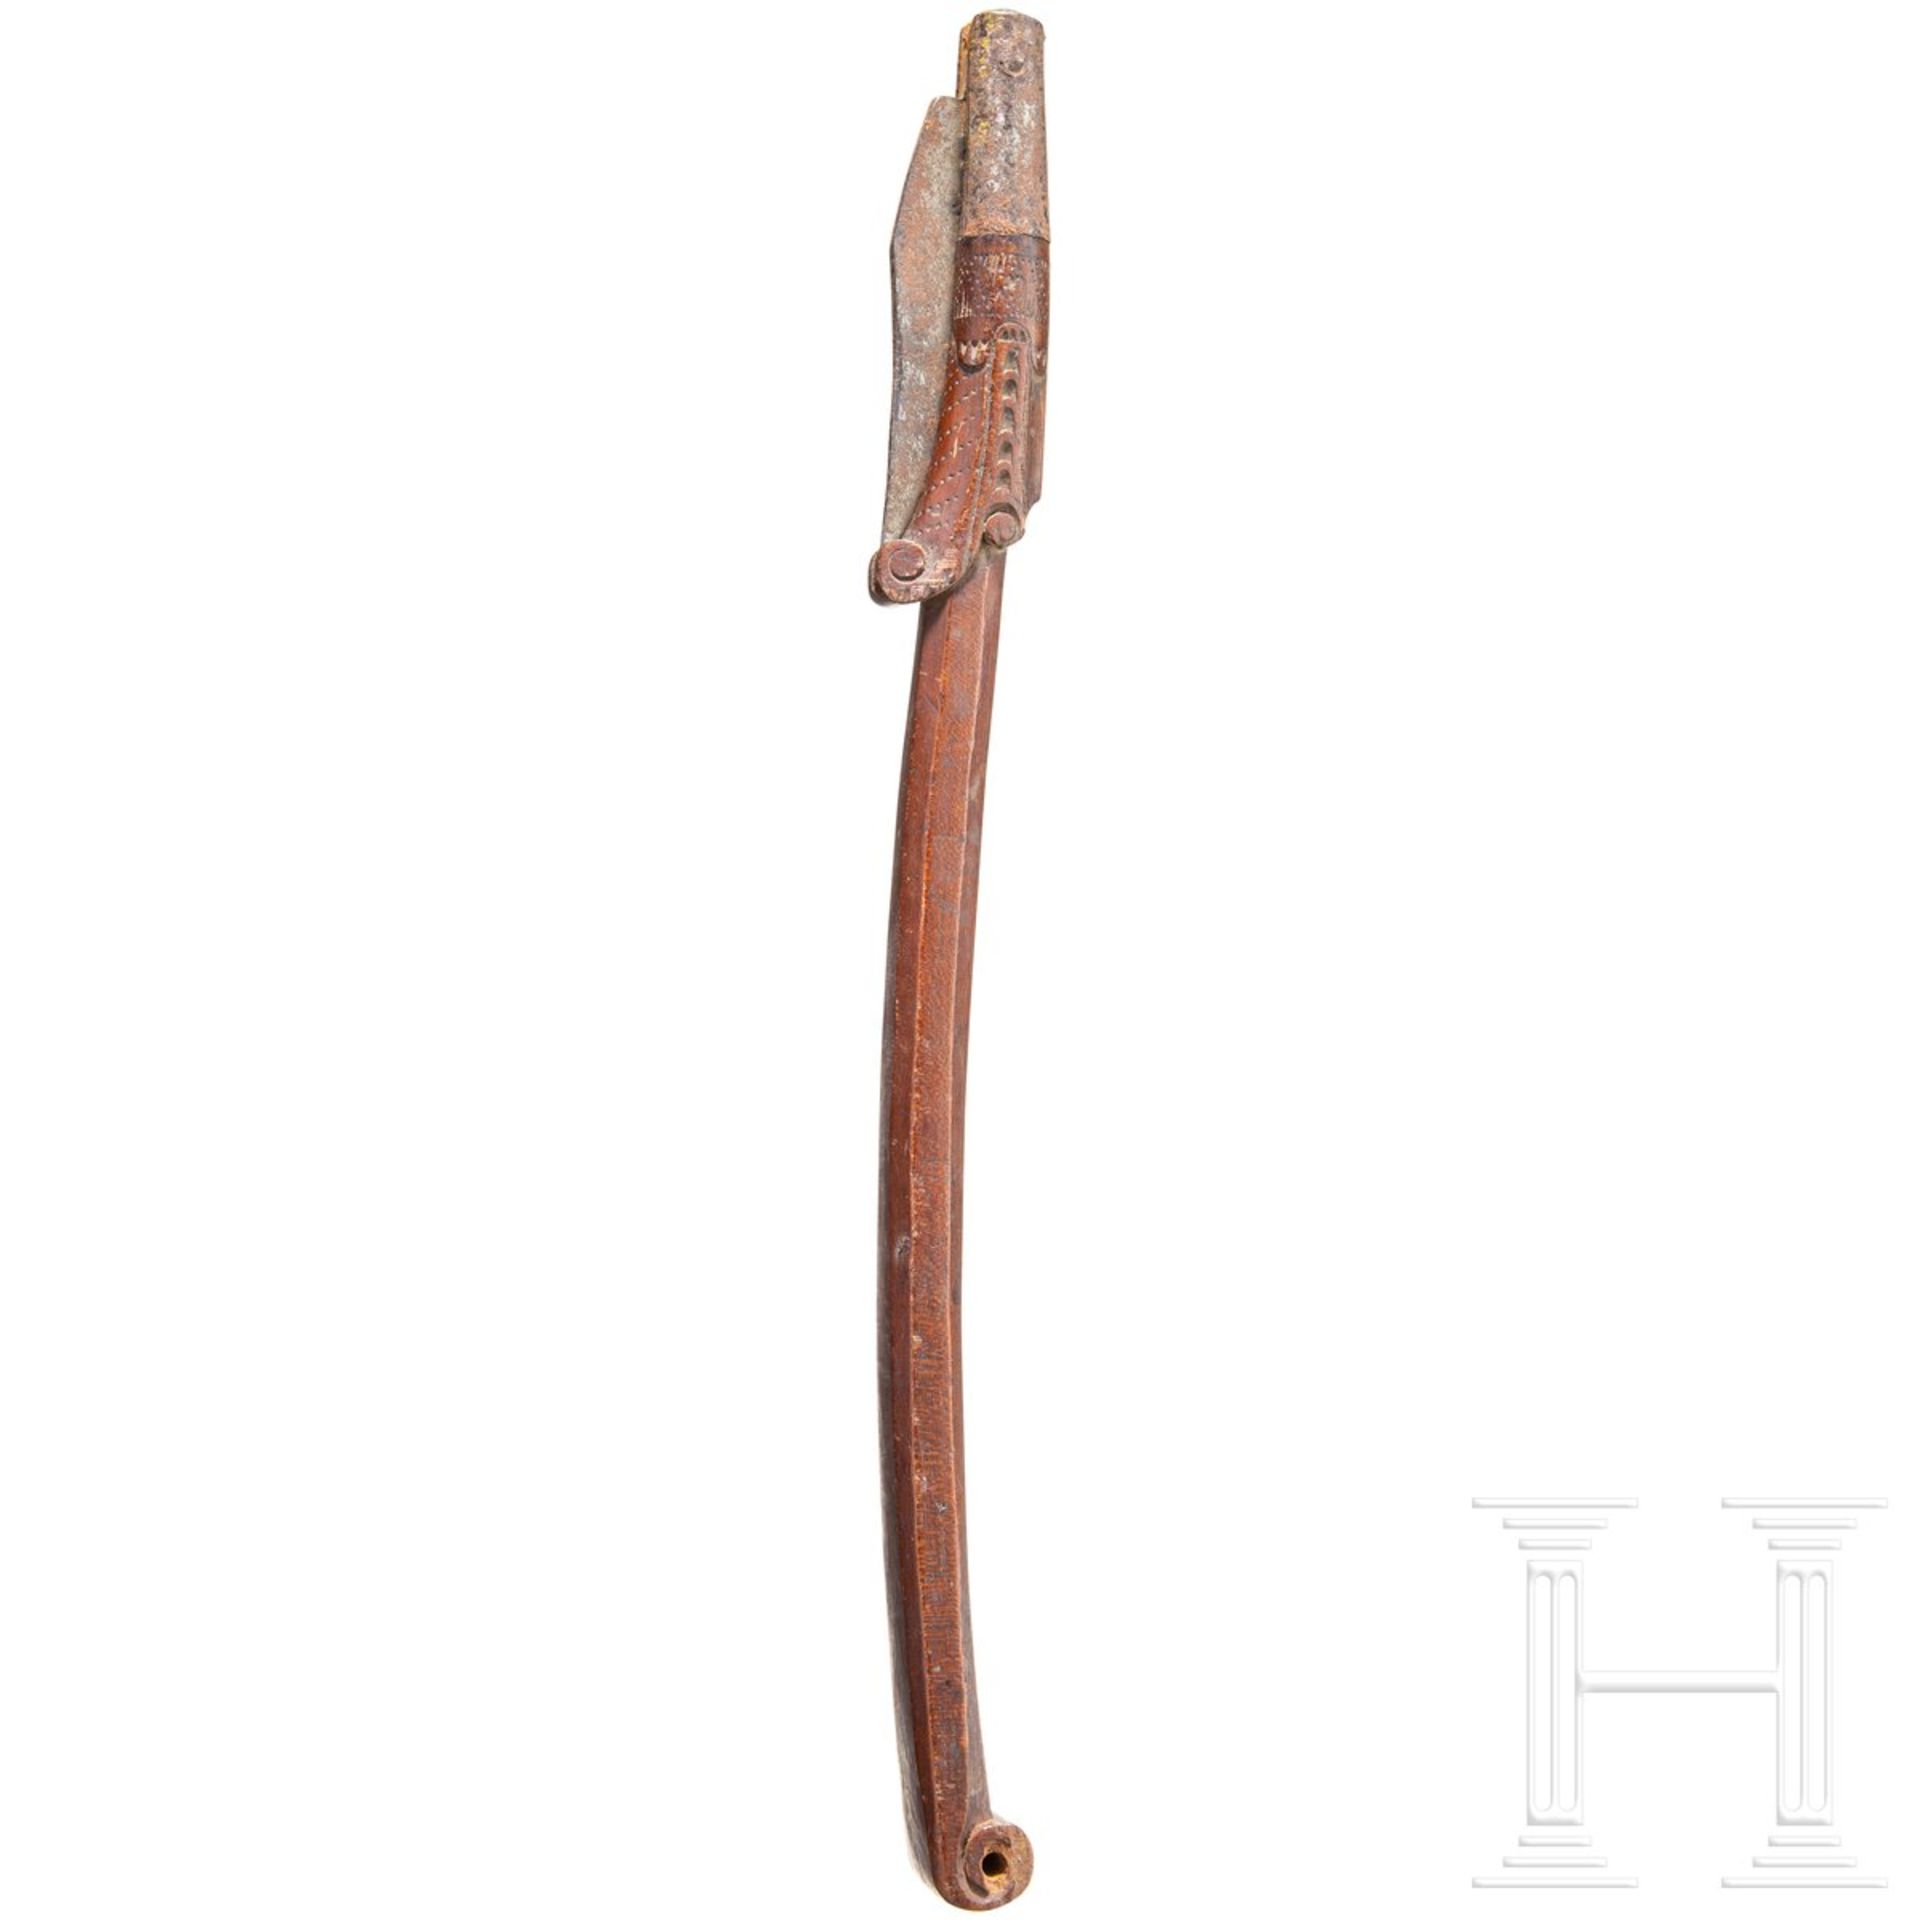 Schultermesser, süddeutsch, 1. Hälfte 18. Jhdt. - Image 2 of 2